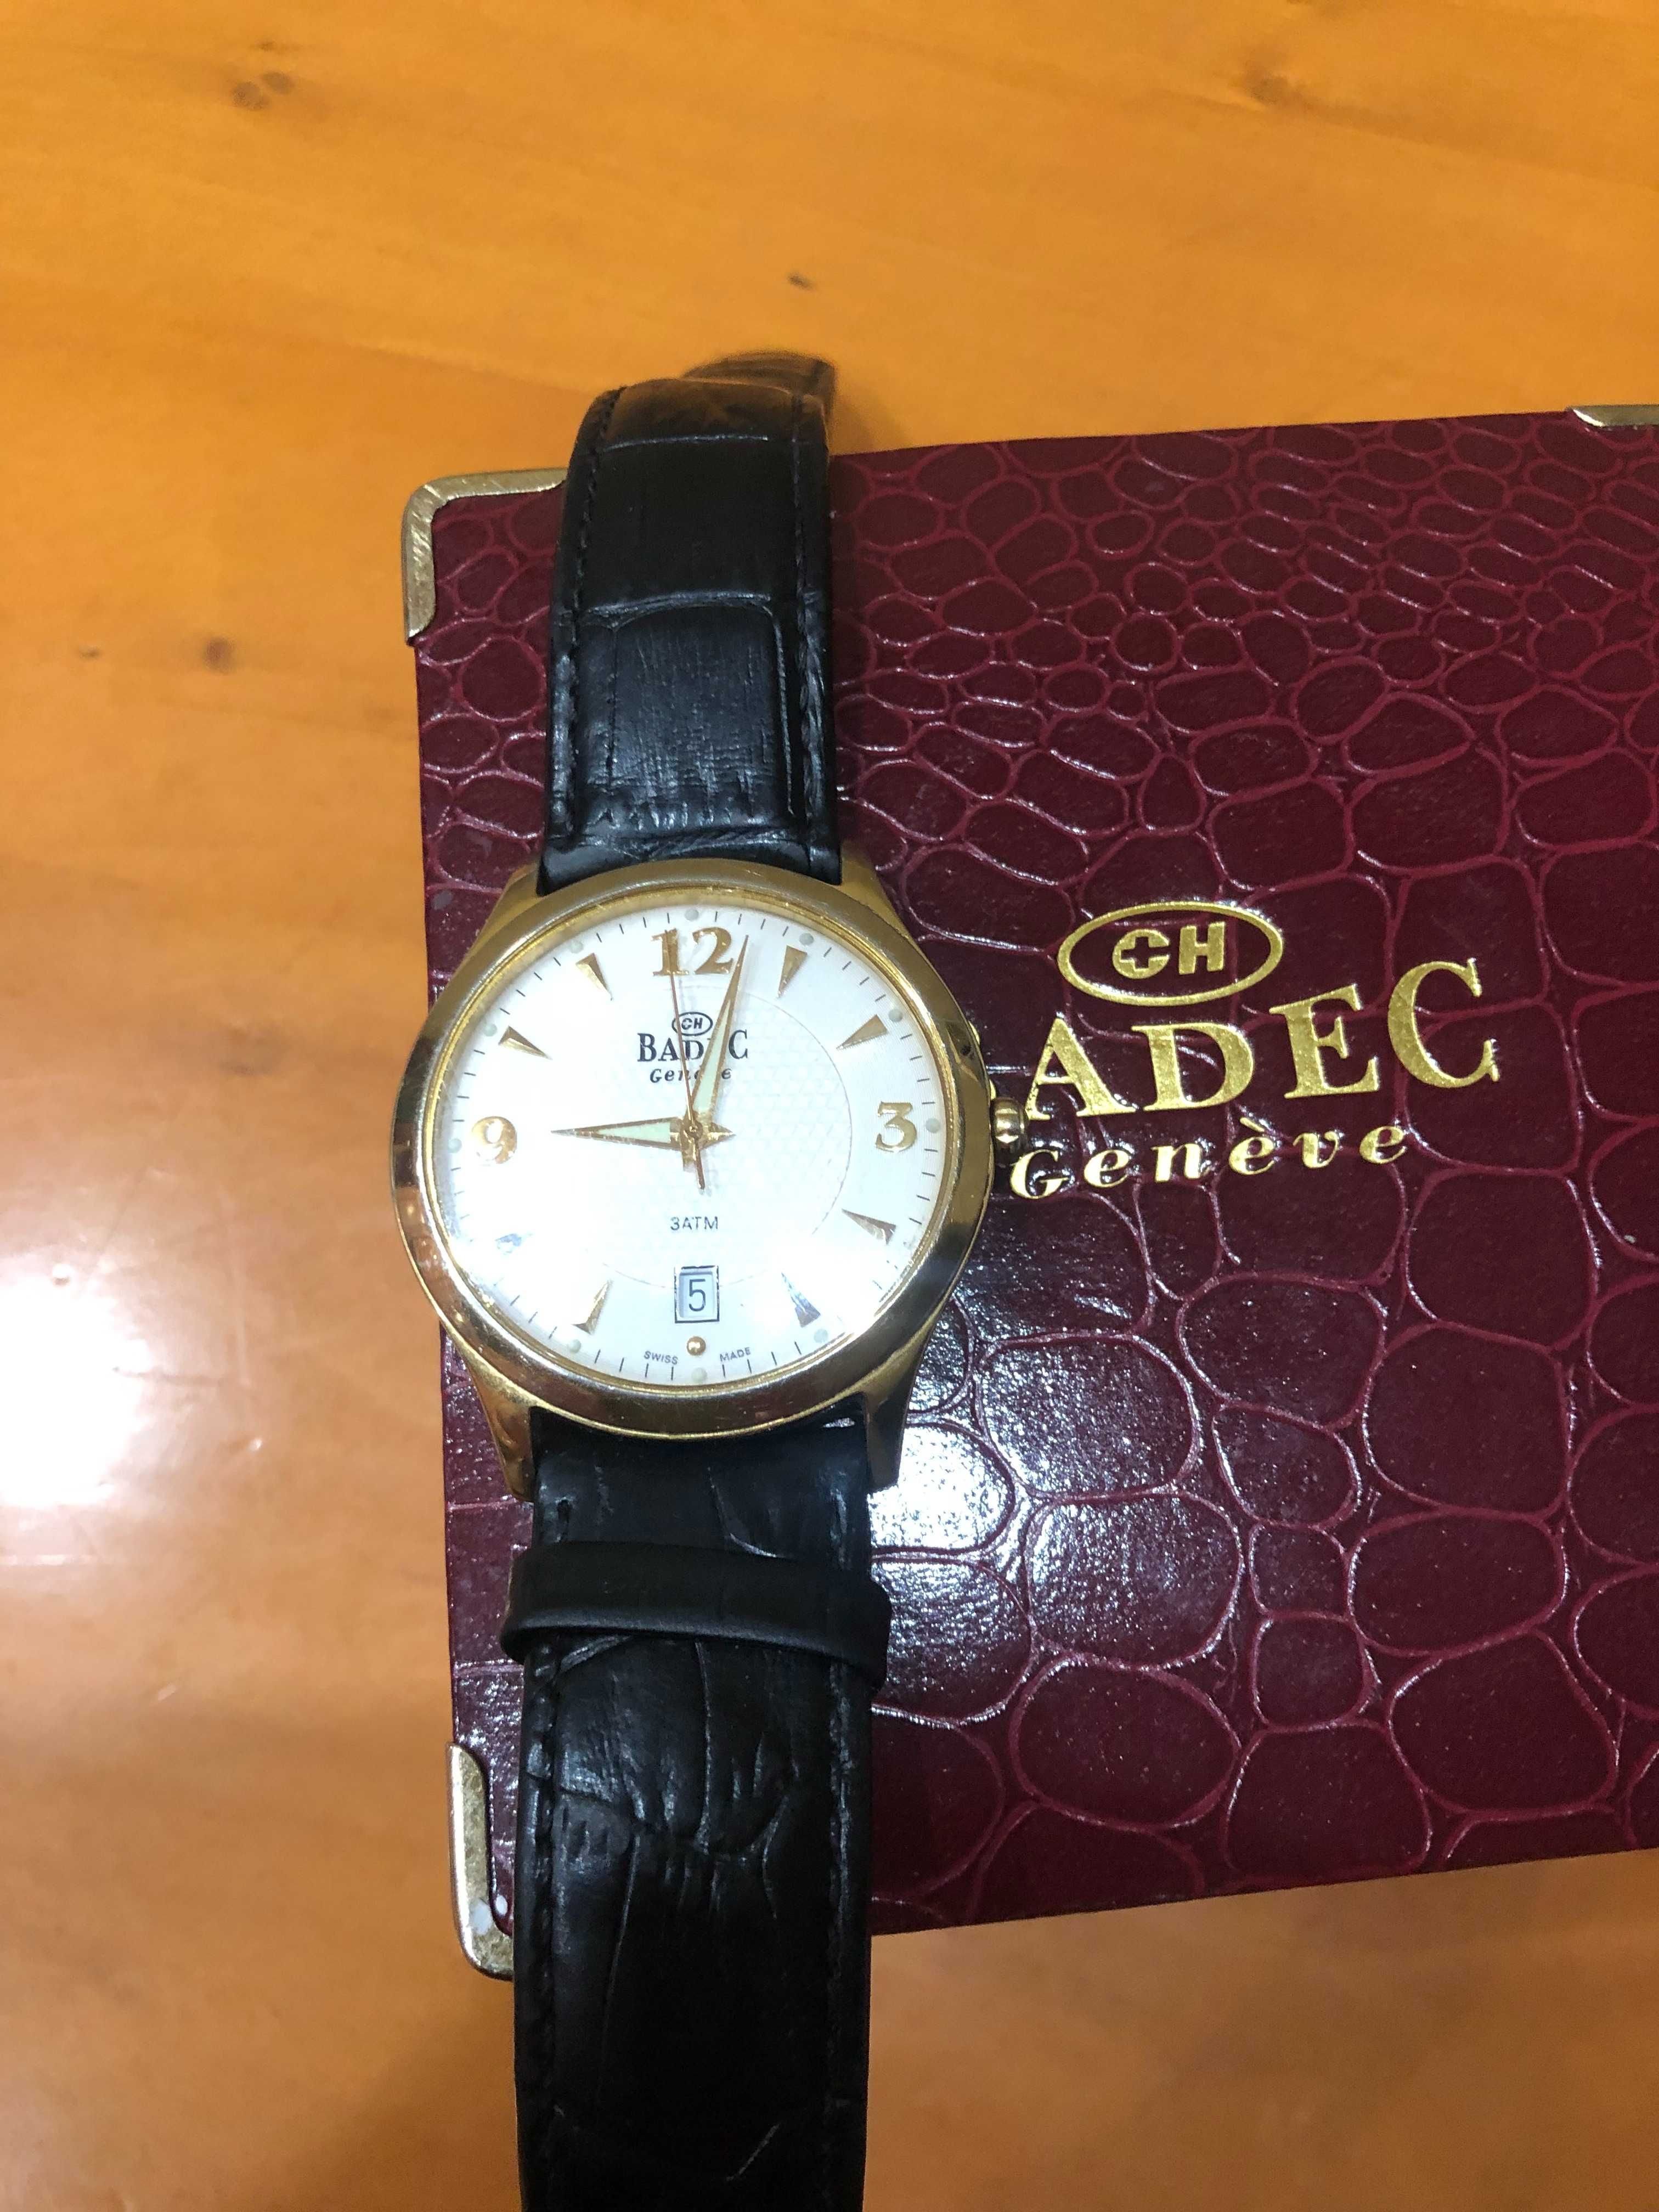 Швейцарские наручные мужские часы BADEC